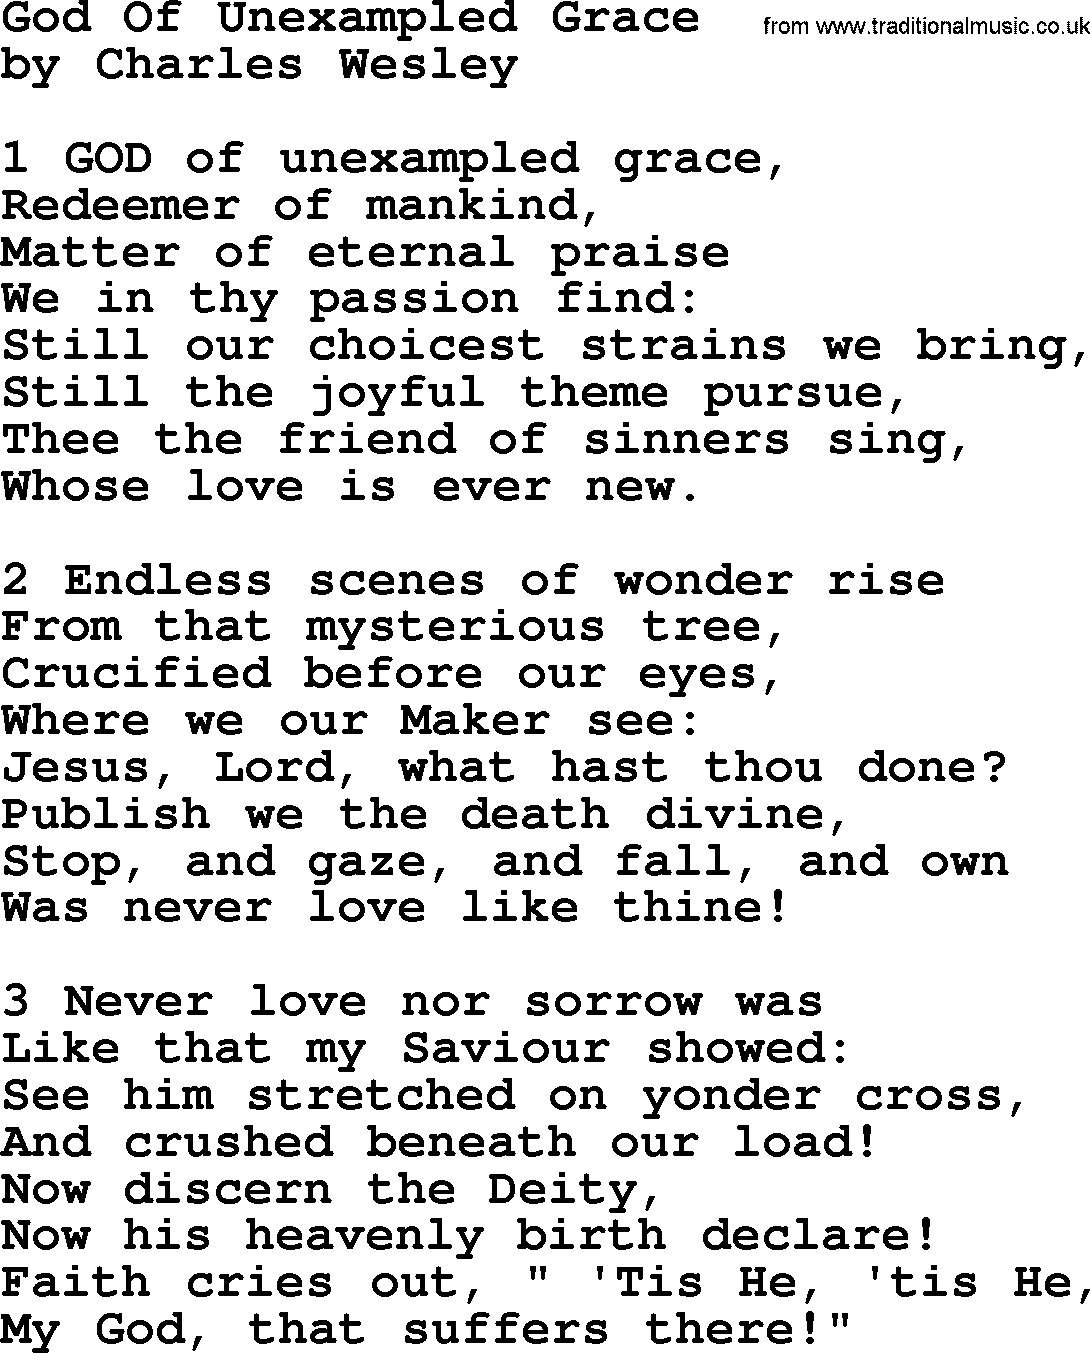 Charles Wesley hymn: God Of Unexampled Grace, lyrics